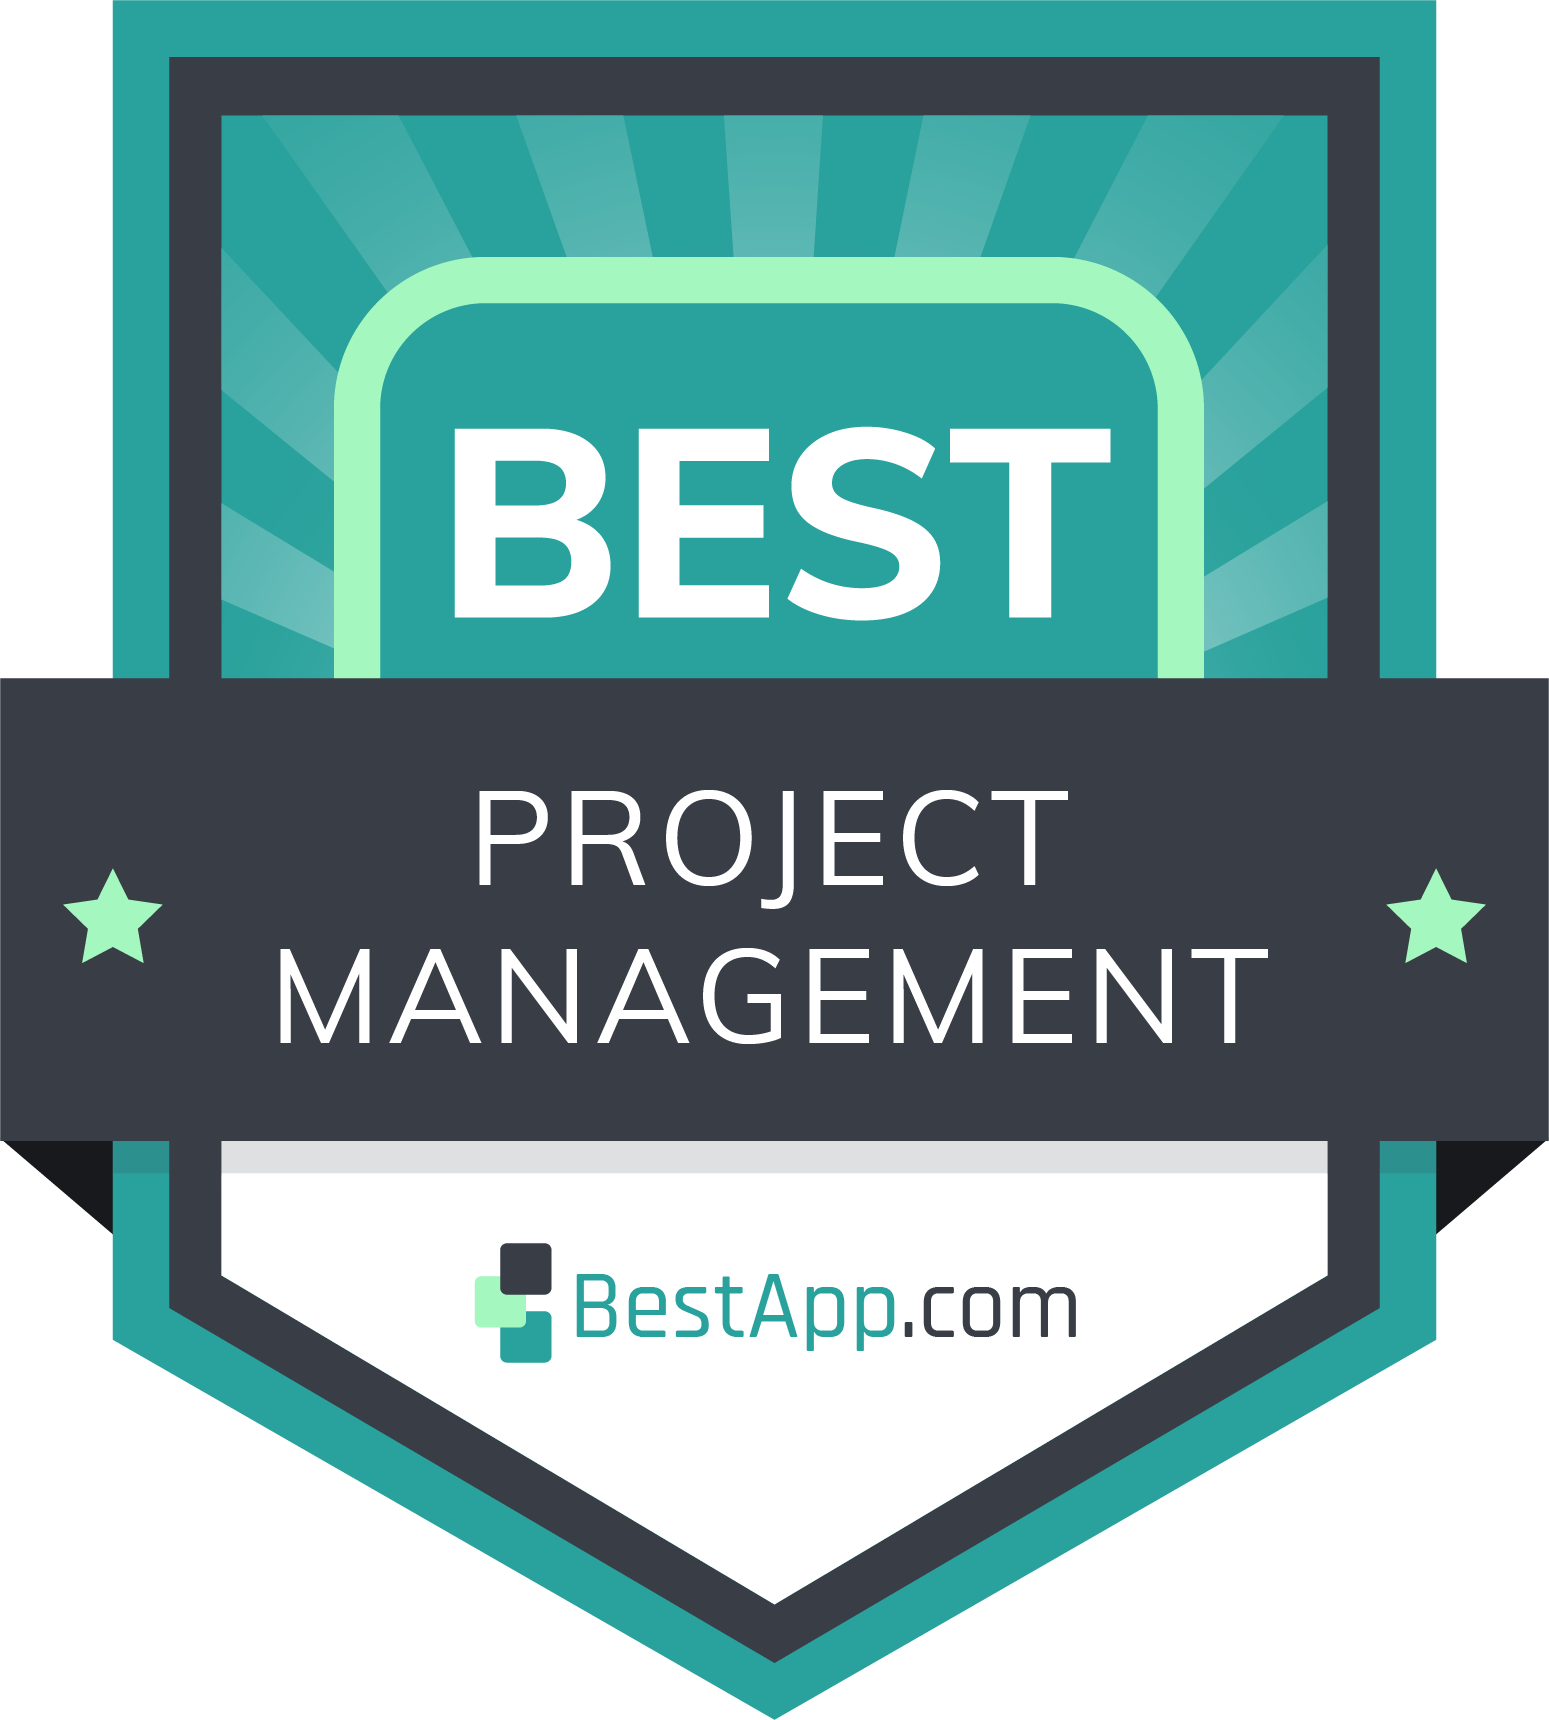 Best Project Management Badge